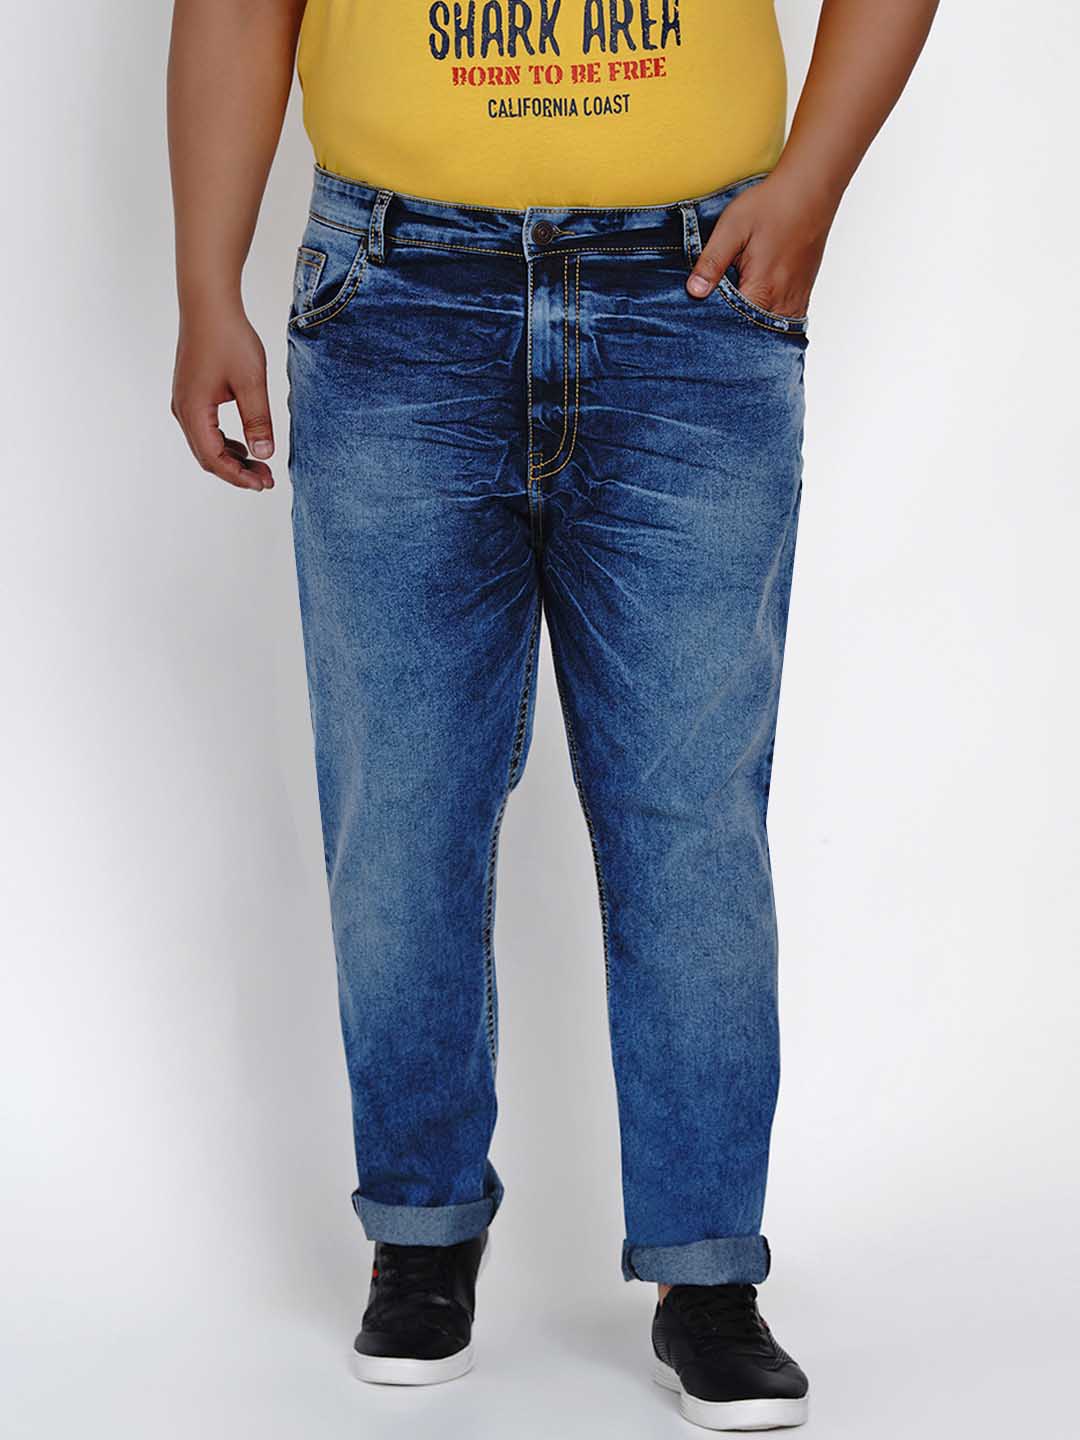 affordables/jeans/JPJ2512/jpj2512-3.jpg